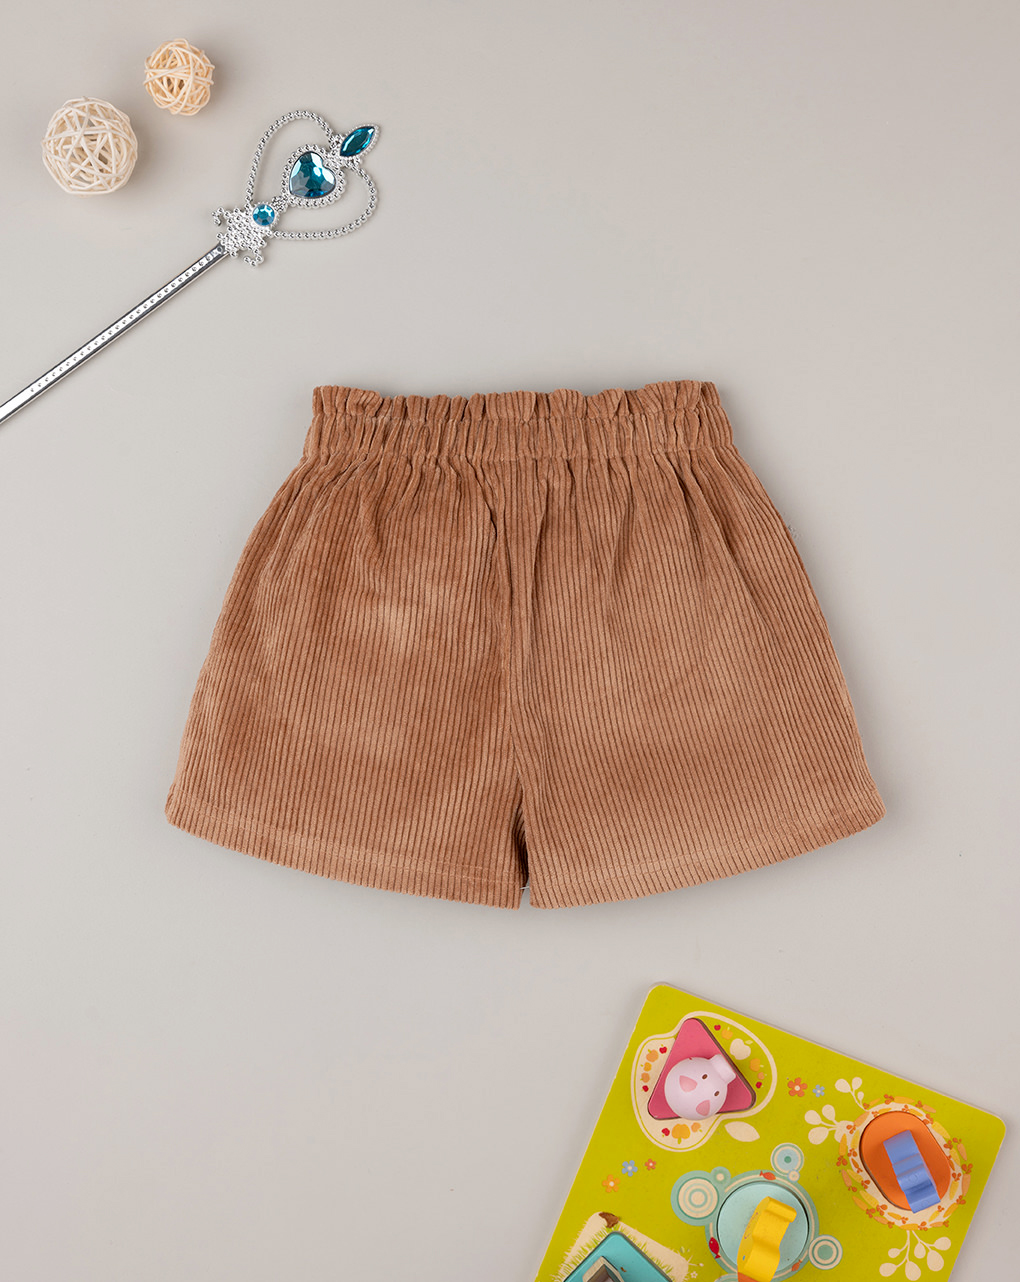 Pantalón corto de niña en terciopelo marrón - Prénatal